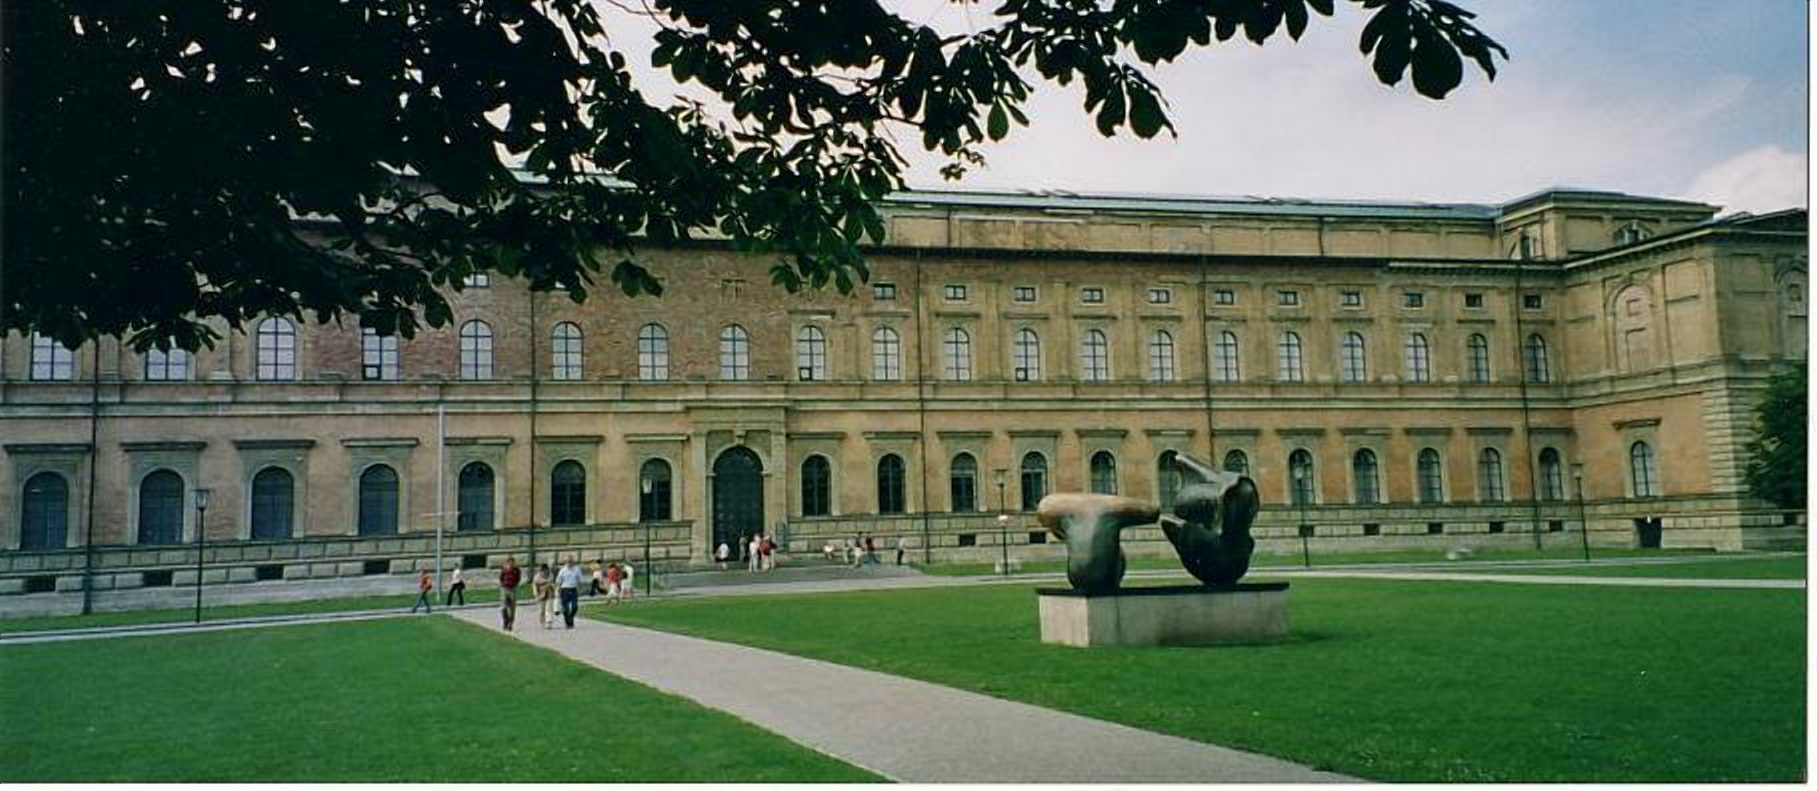 Музей Старая пинакотека в Мюнхене